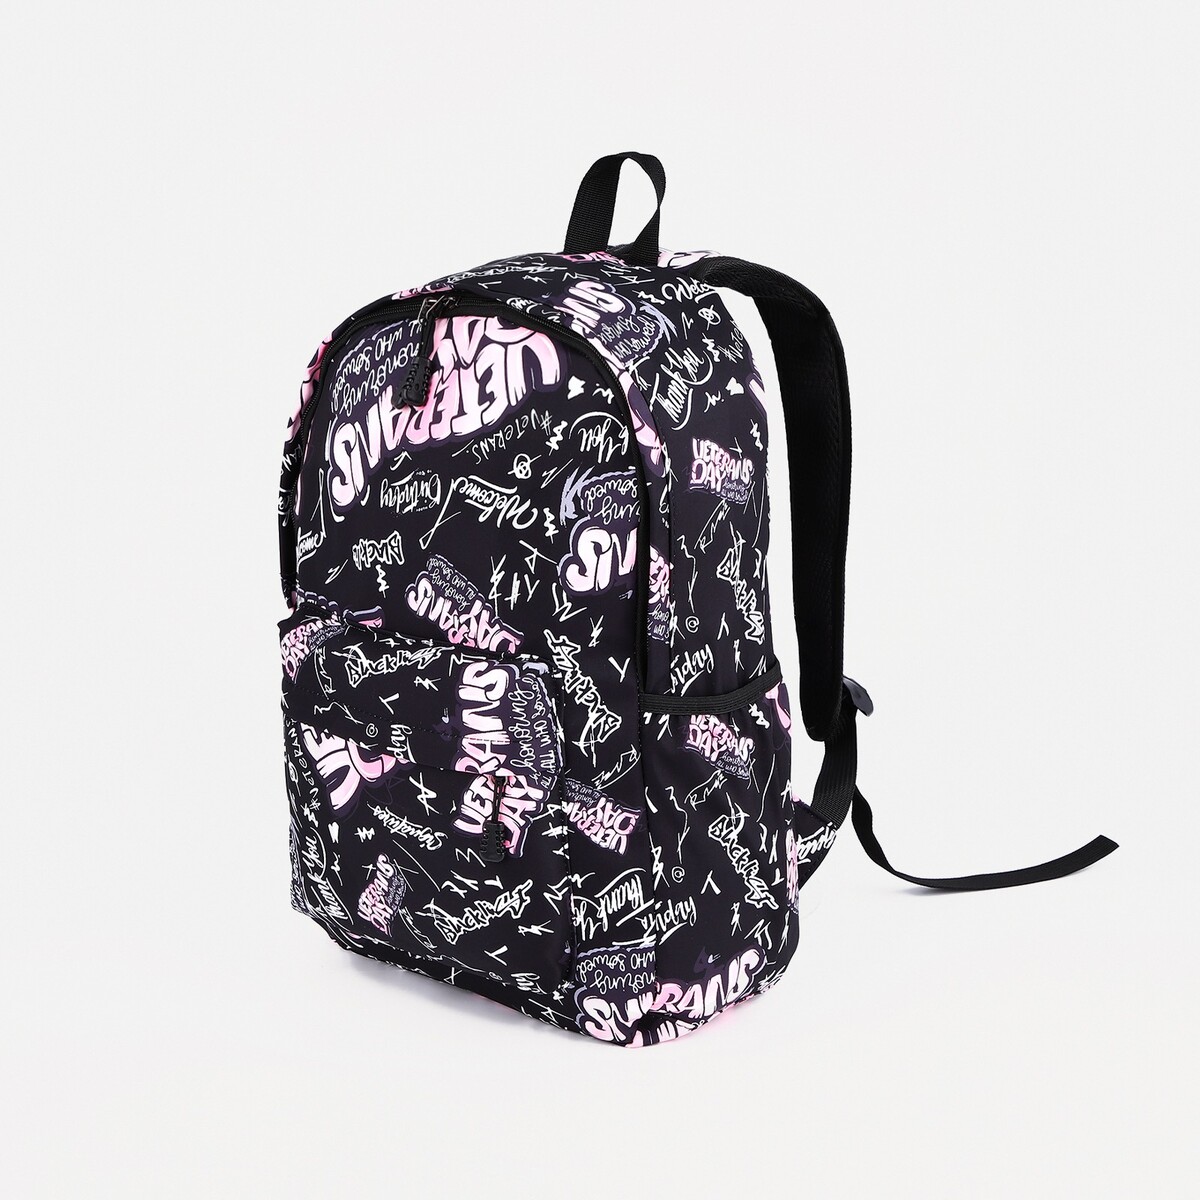 Рюкзак на молнии, 3 наружных кармана, цвет розовый/черный